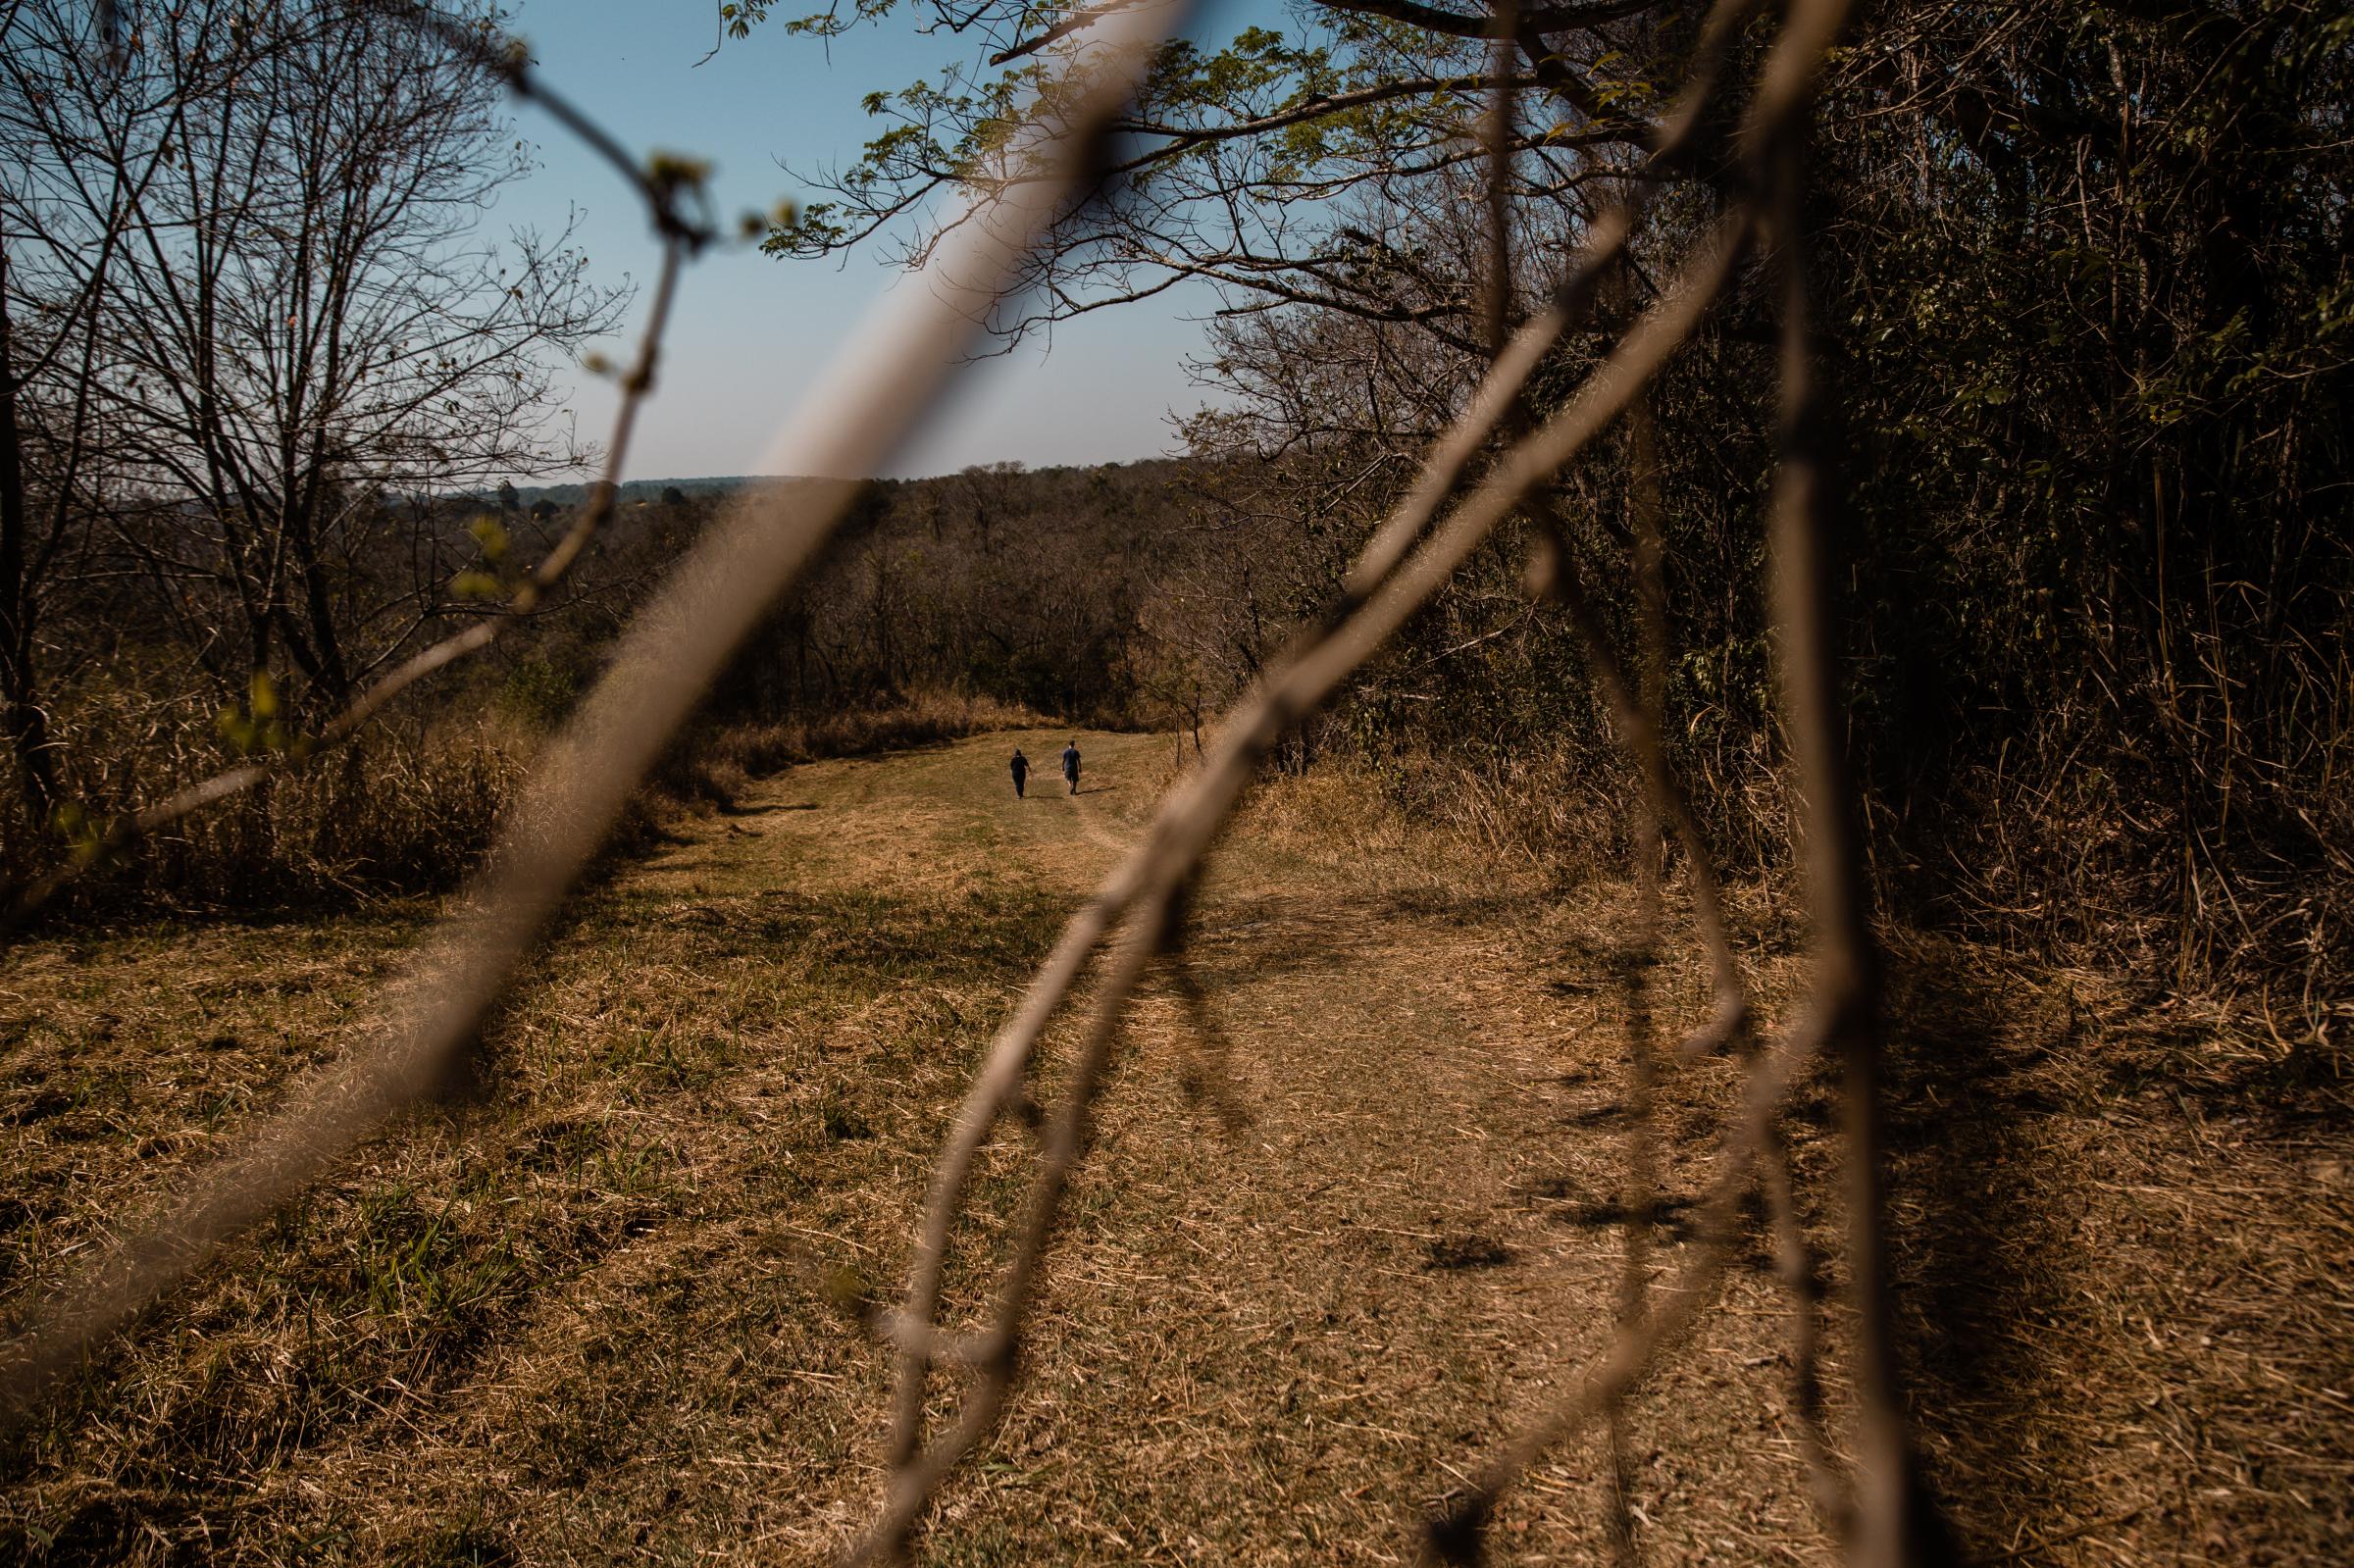 Morro de Ipanema - Two people walking on the open tracks of Ipanema...